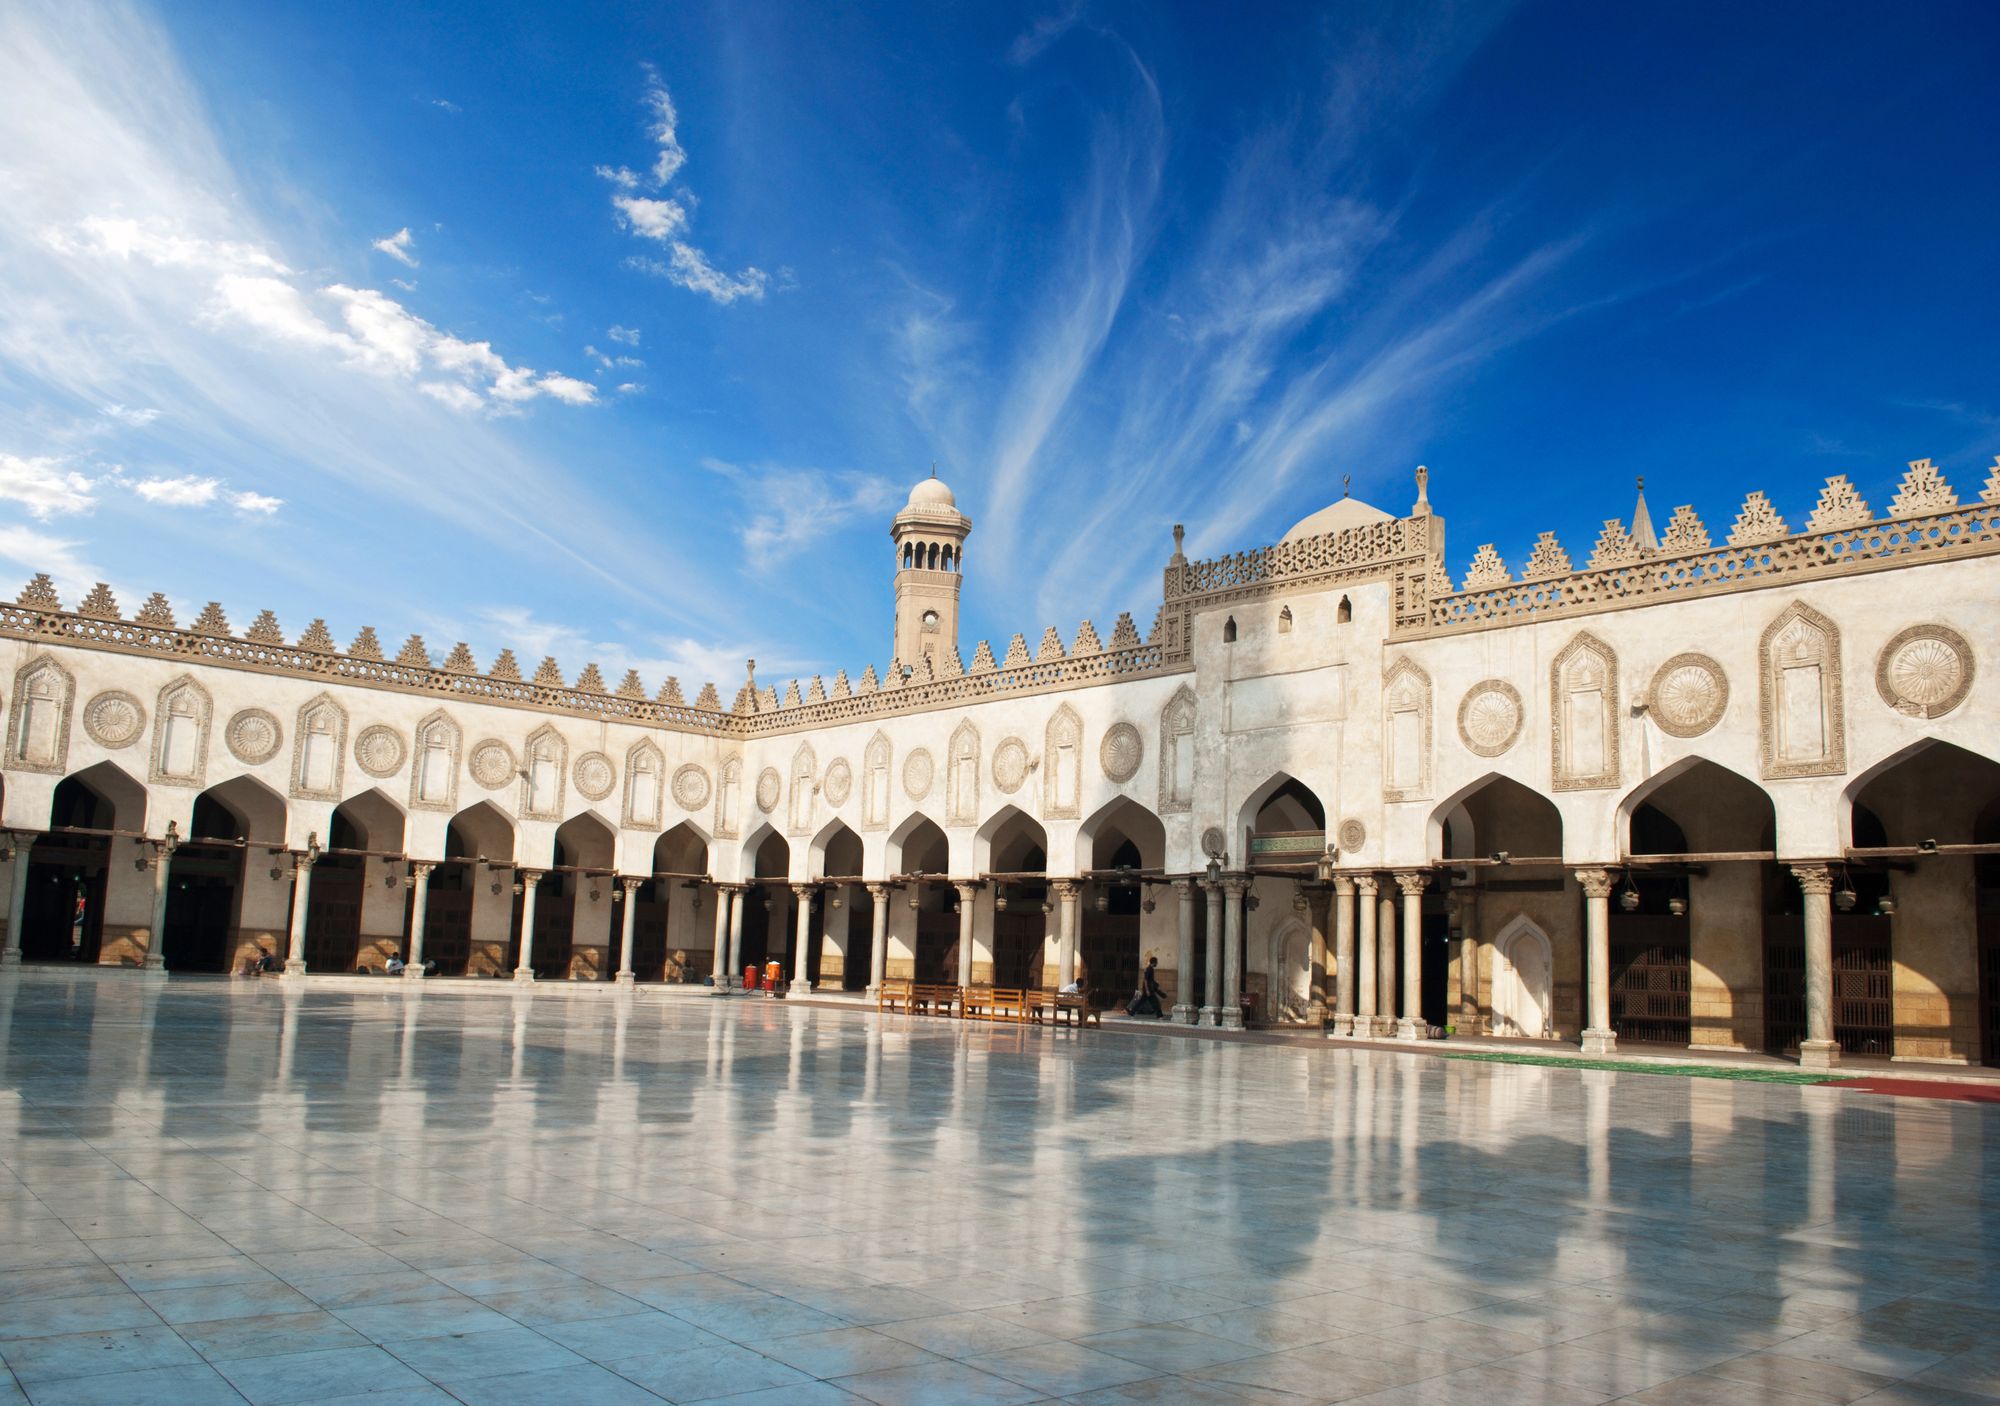 Al-Azhar University and Mosque